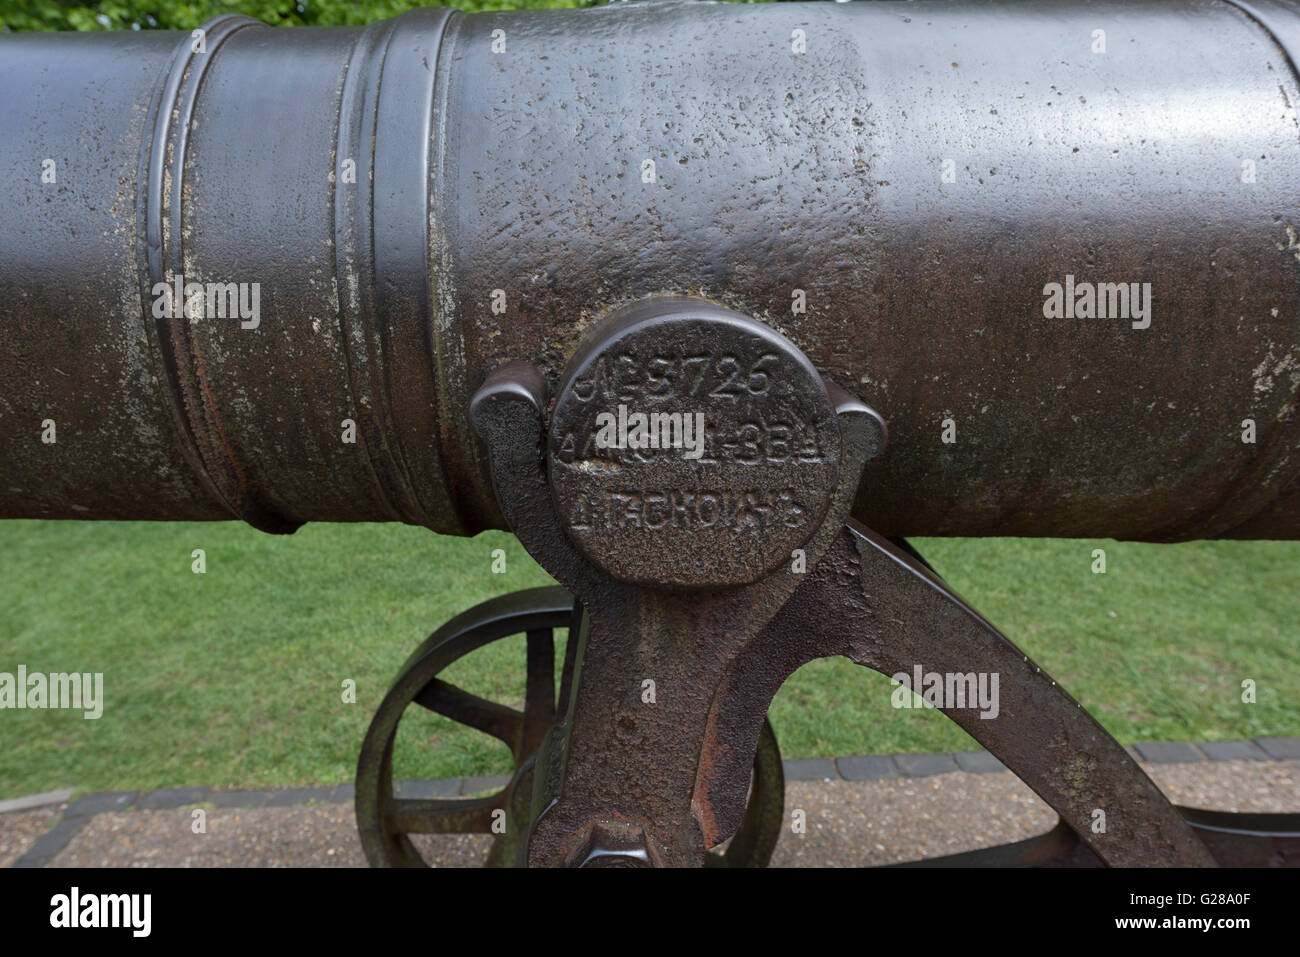 Dettaglio della borchia sulla vecchia canon russo Ely Cambridgeshire England Regno Unito Foto Stock